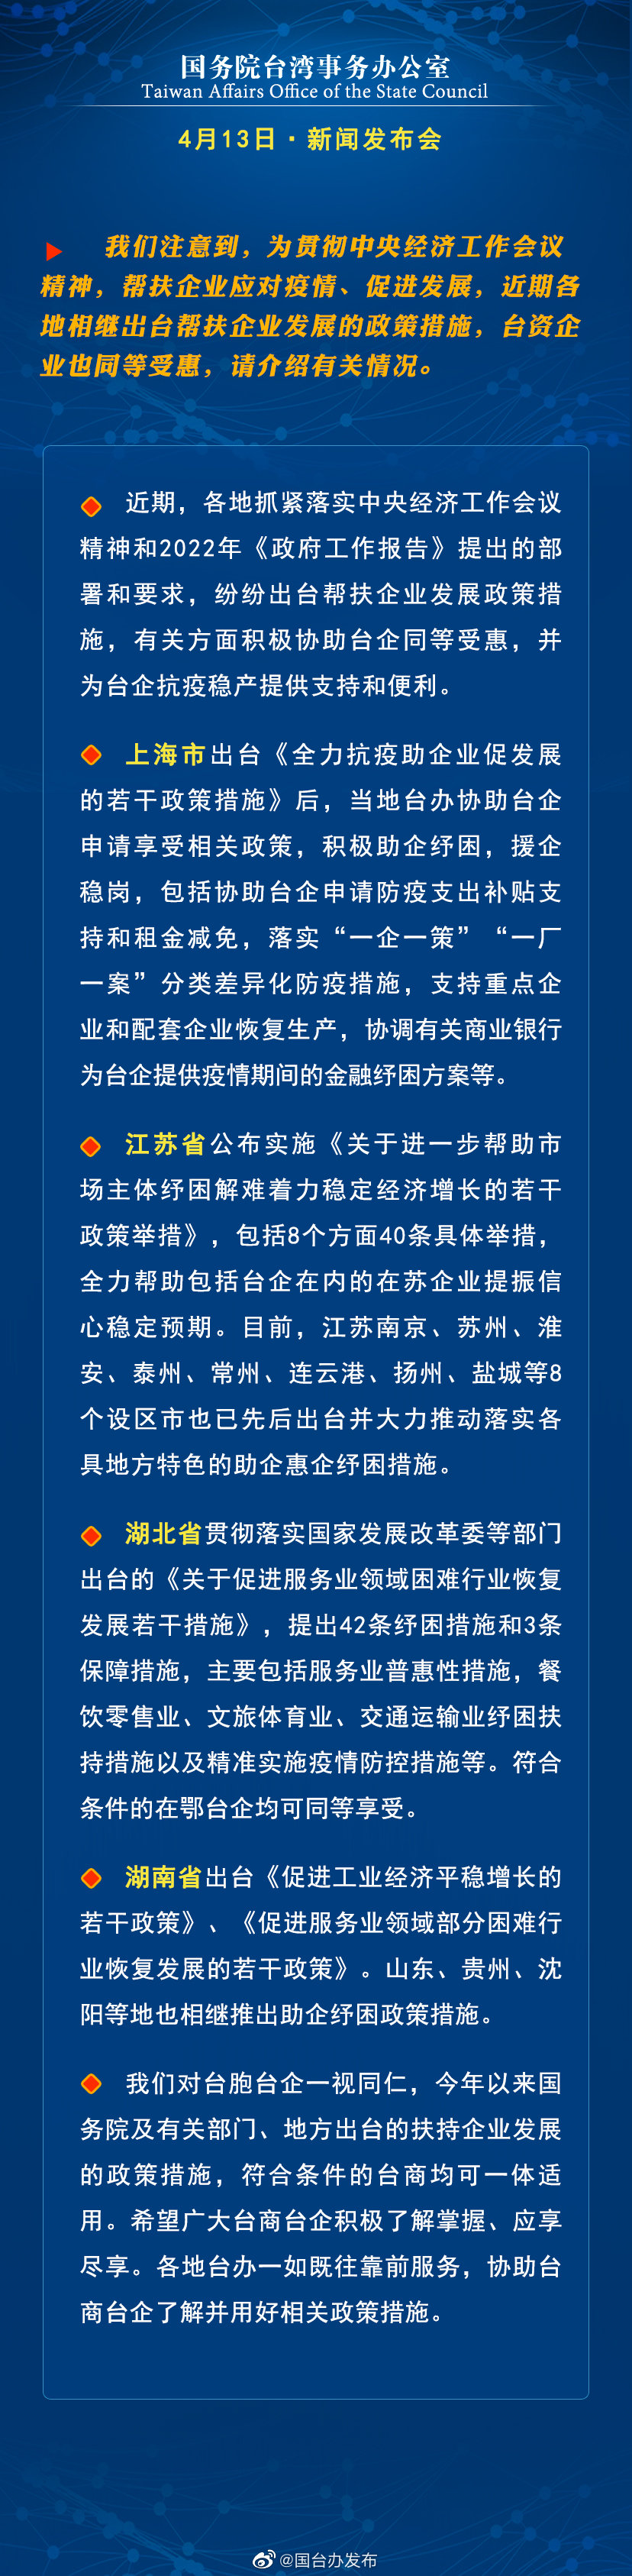 国务院台湾事务办公室4月13日·新闻发布会